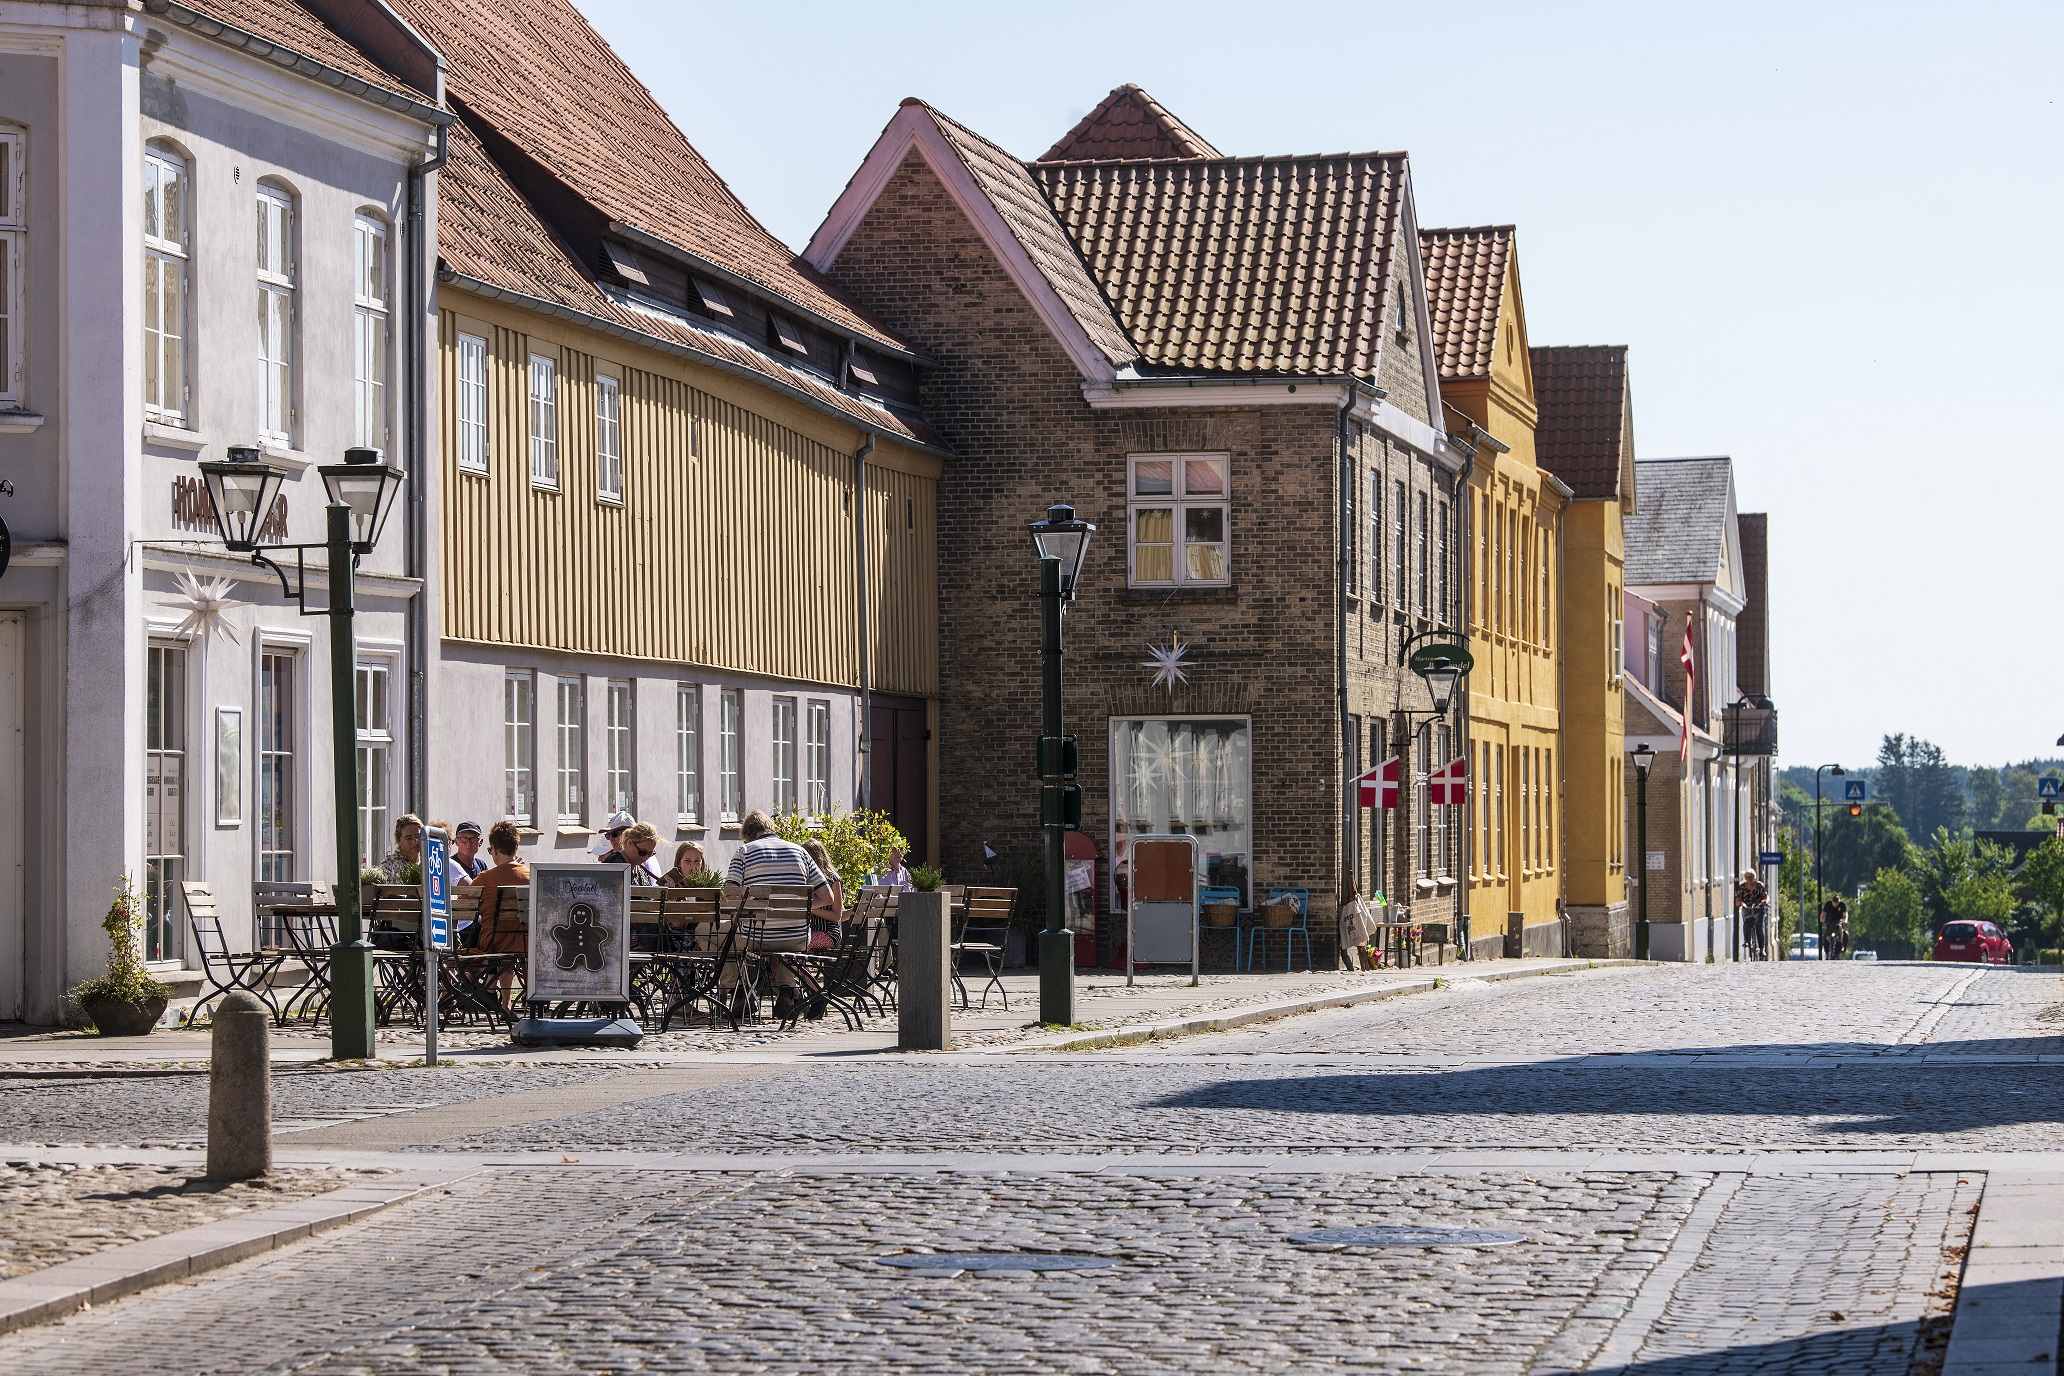 Et bybillede fra Christiansfeld med en brostensbelagt gade og en række karakteristiske huse i to til tre etager